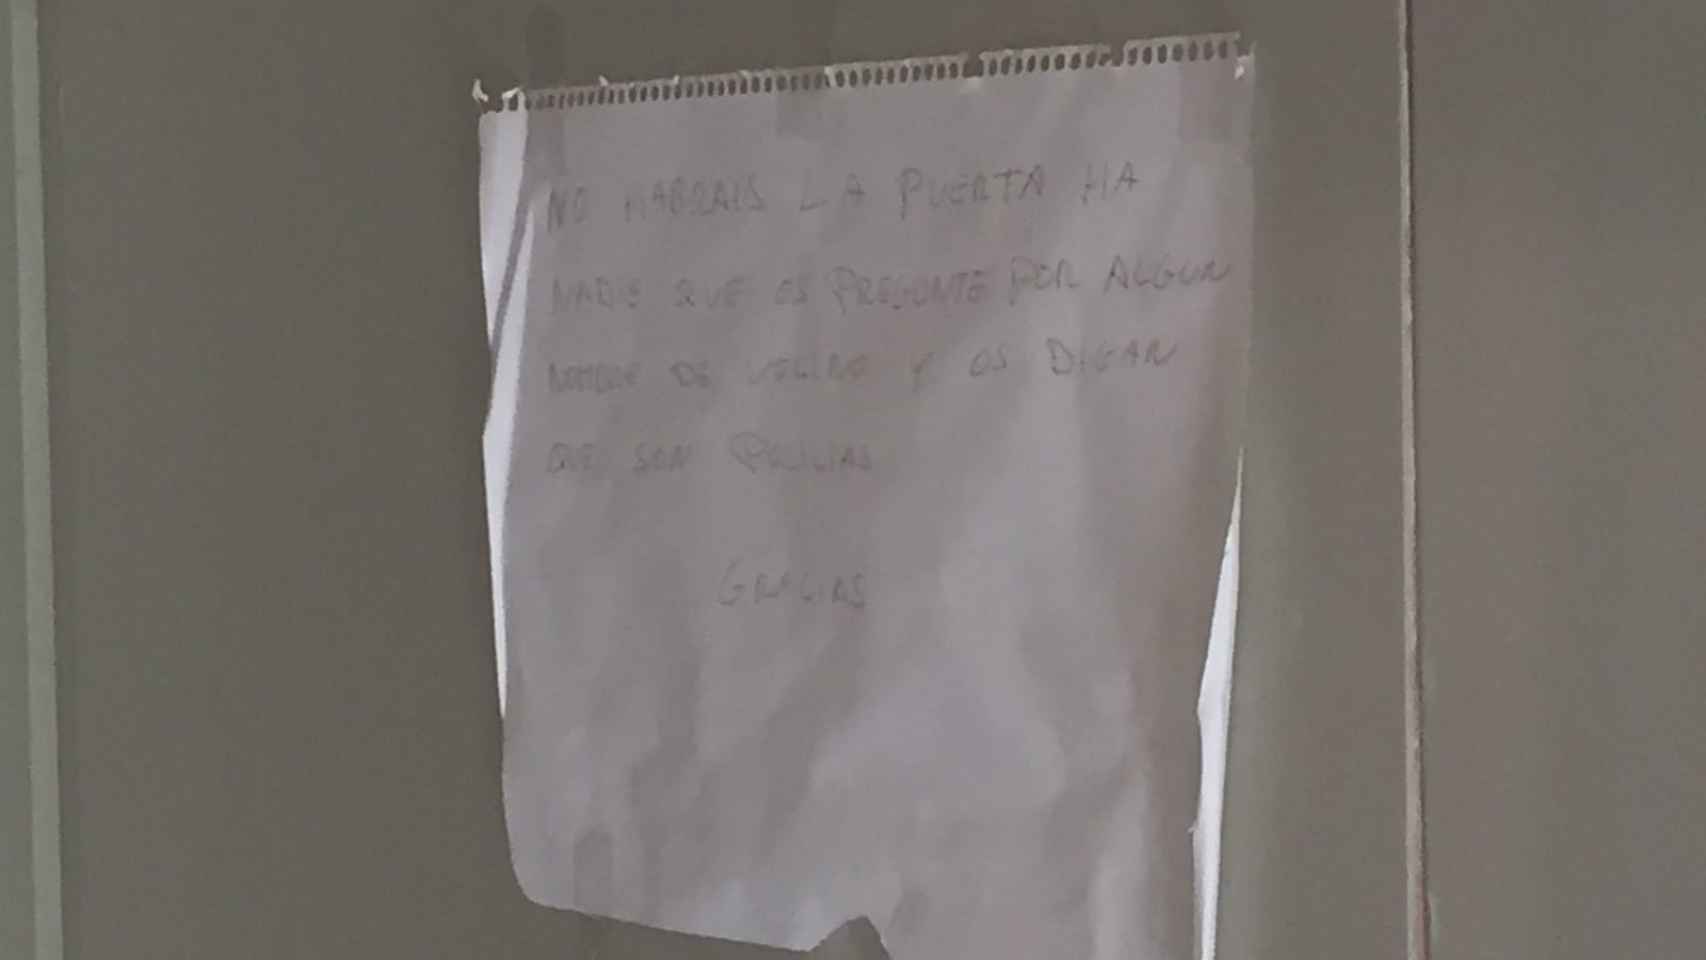 Mensaje de aviso en la sede del sindicato de manteros de Barcelona